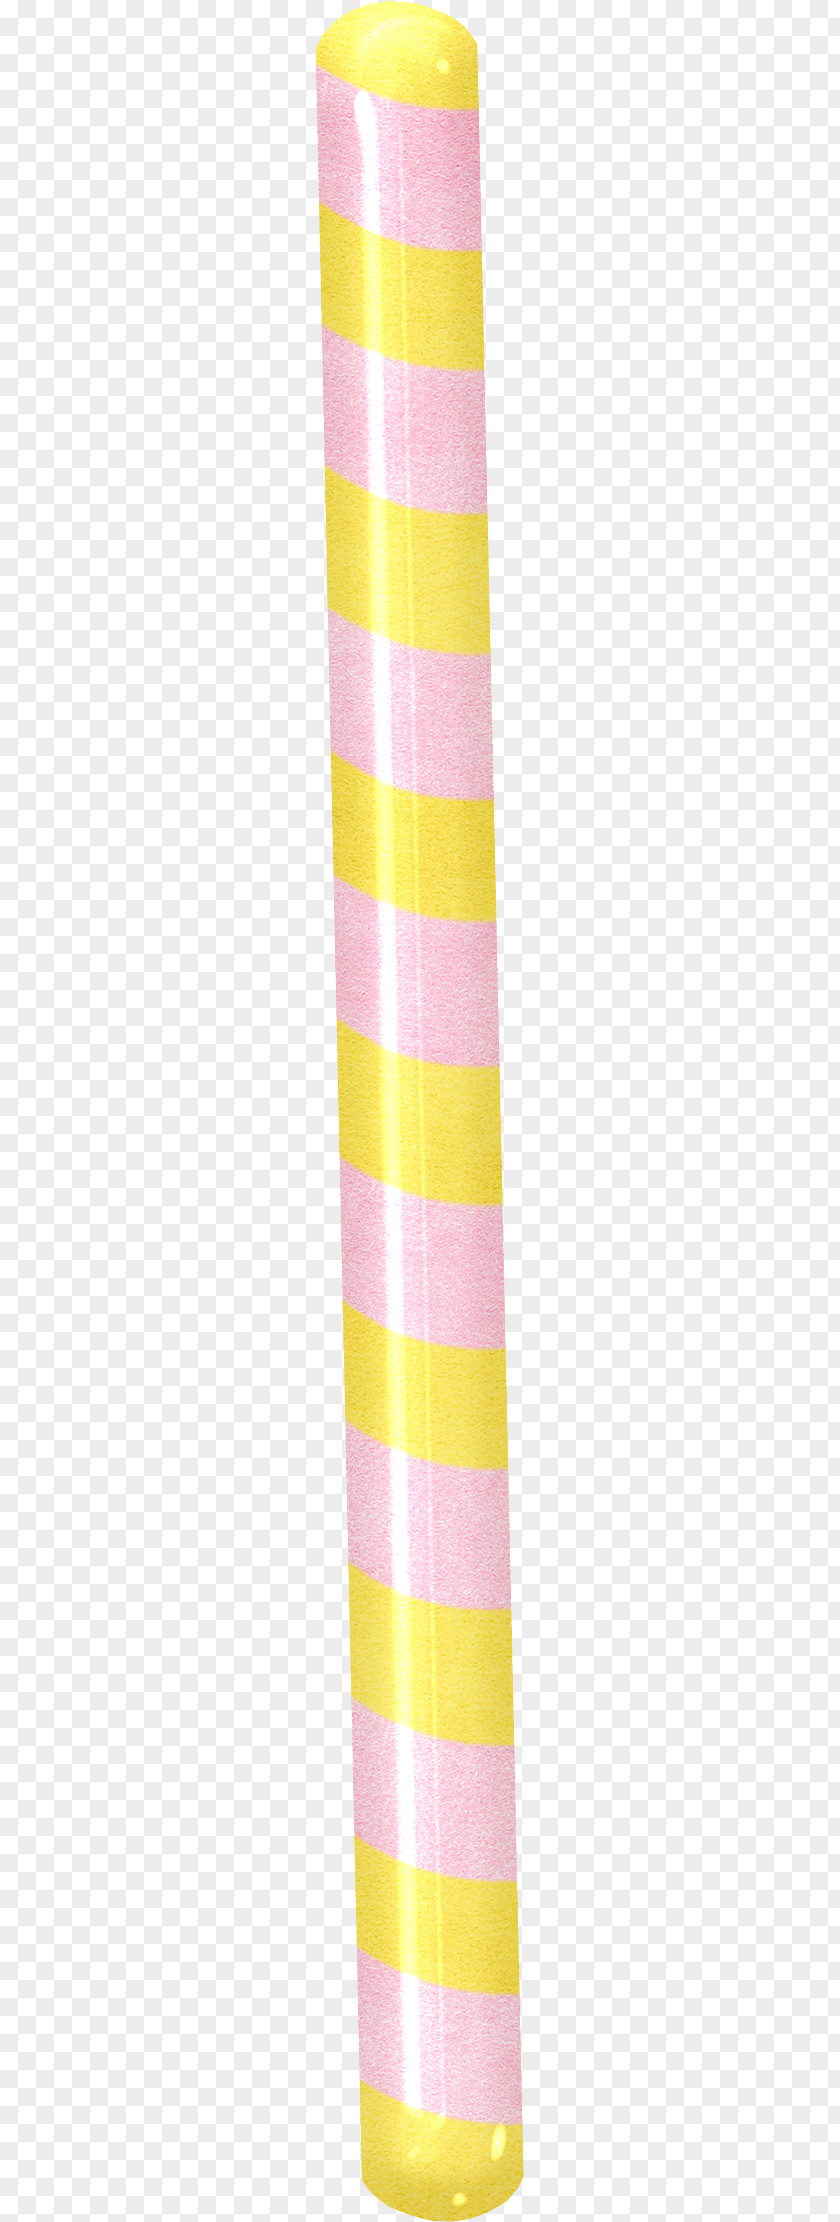 Sugar Stick Yellow Pattern PNG